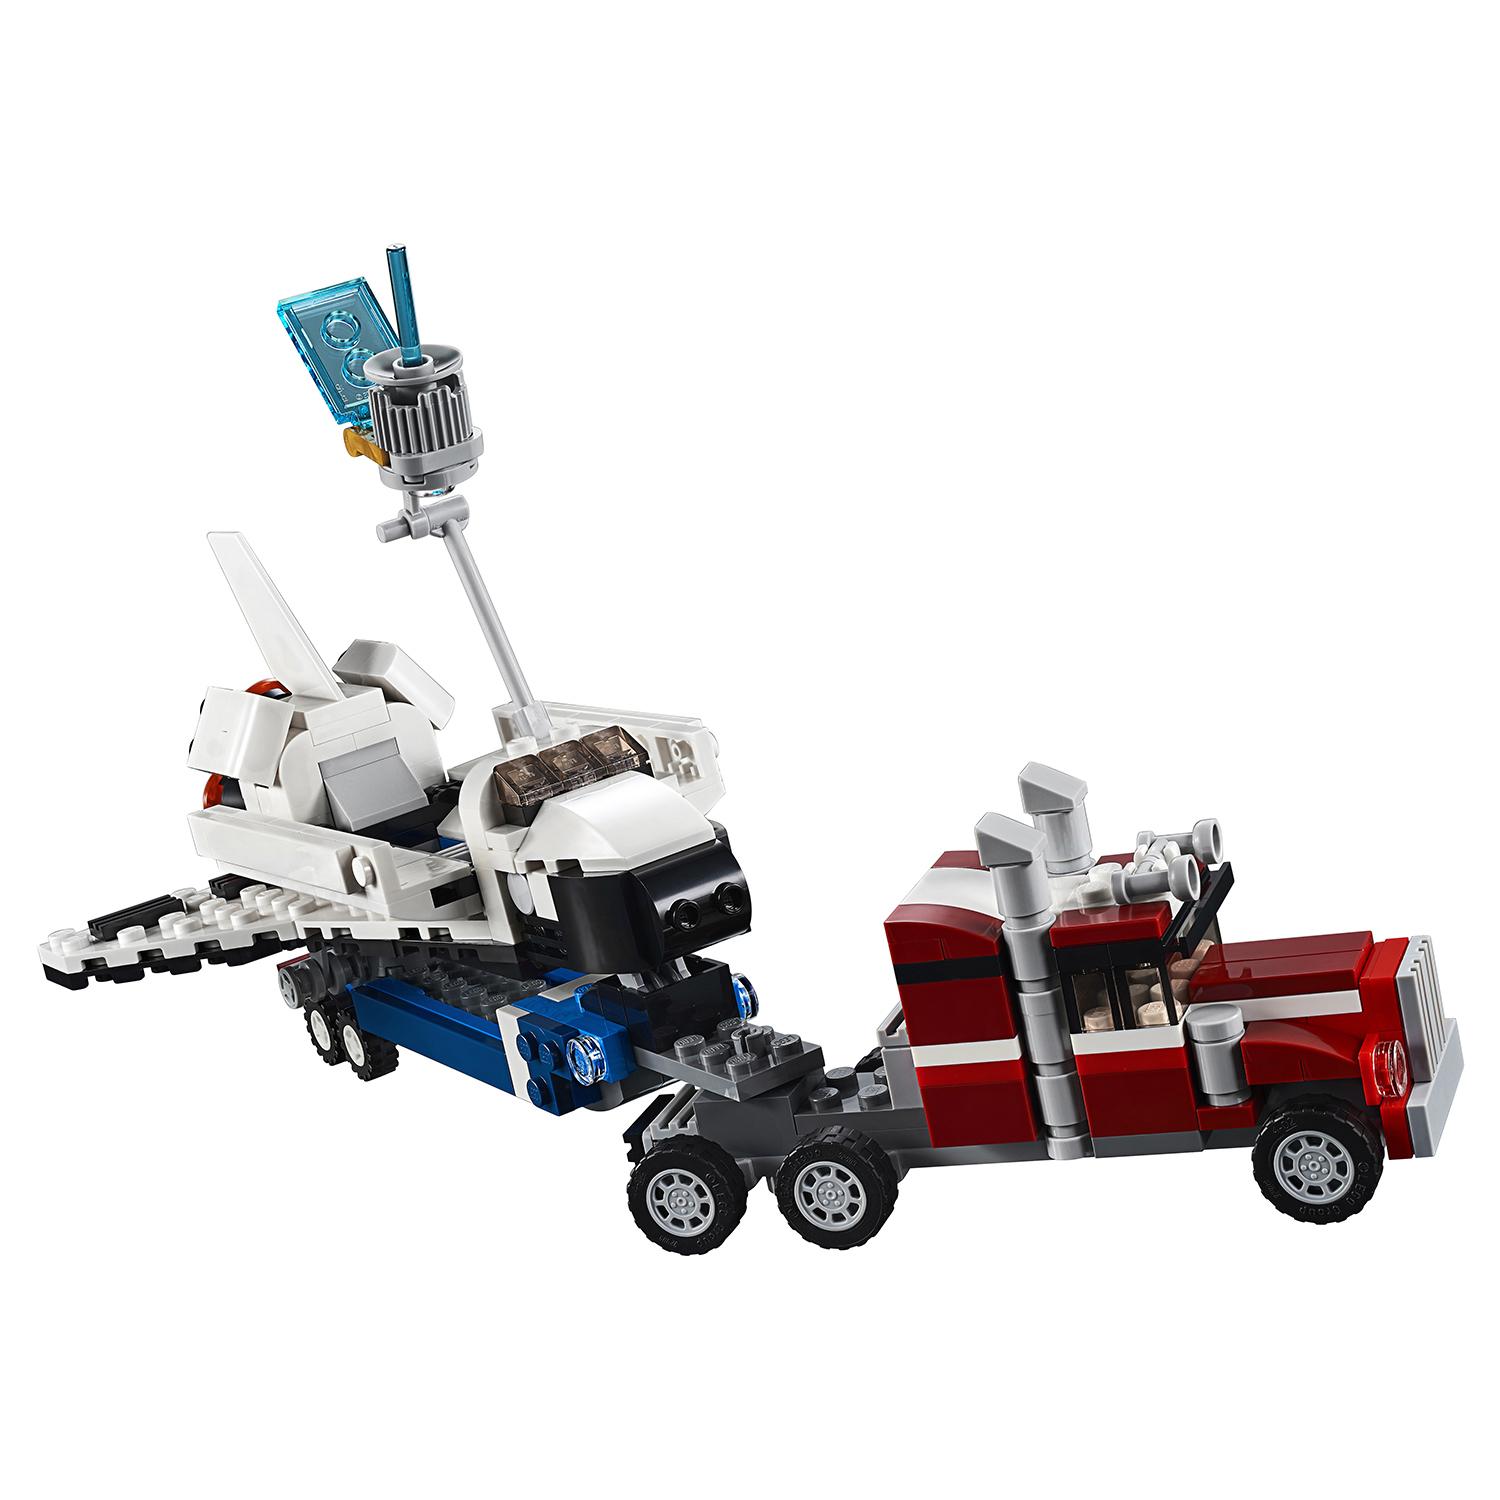 Конструктор LEGO Creator 3 в 1 - Транспортировщик шаттлов